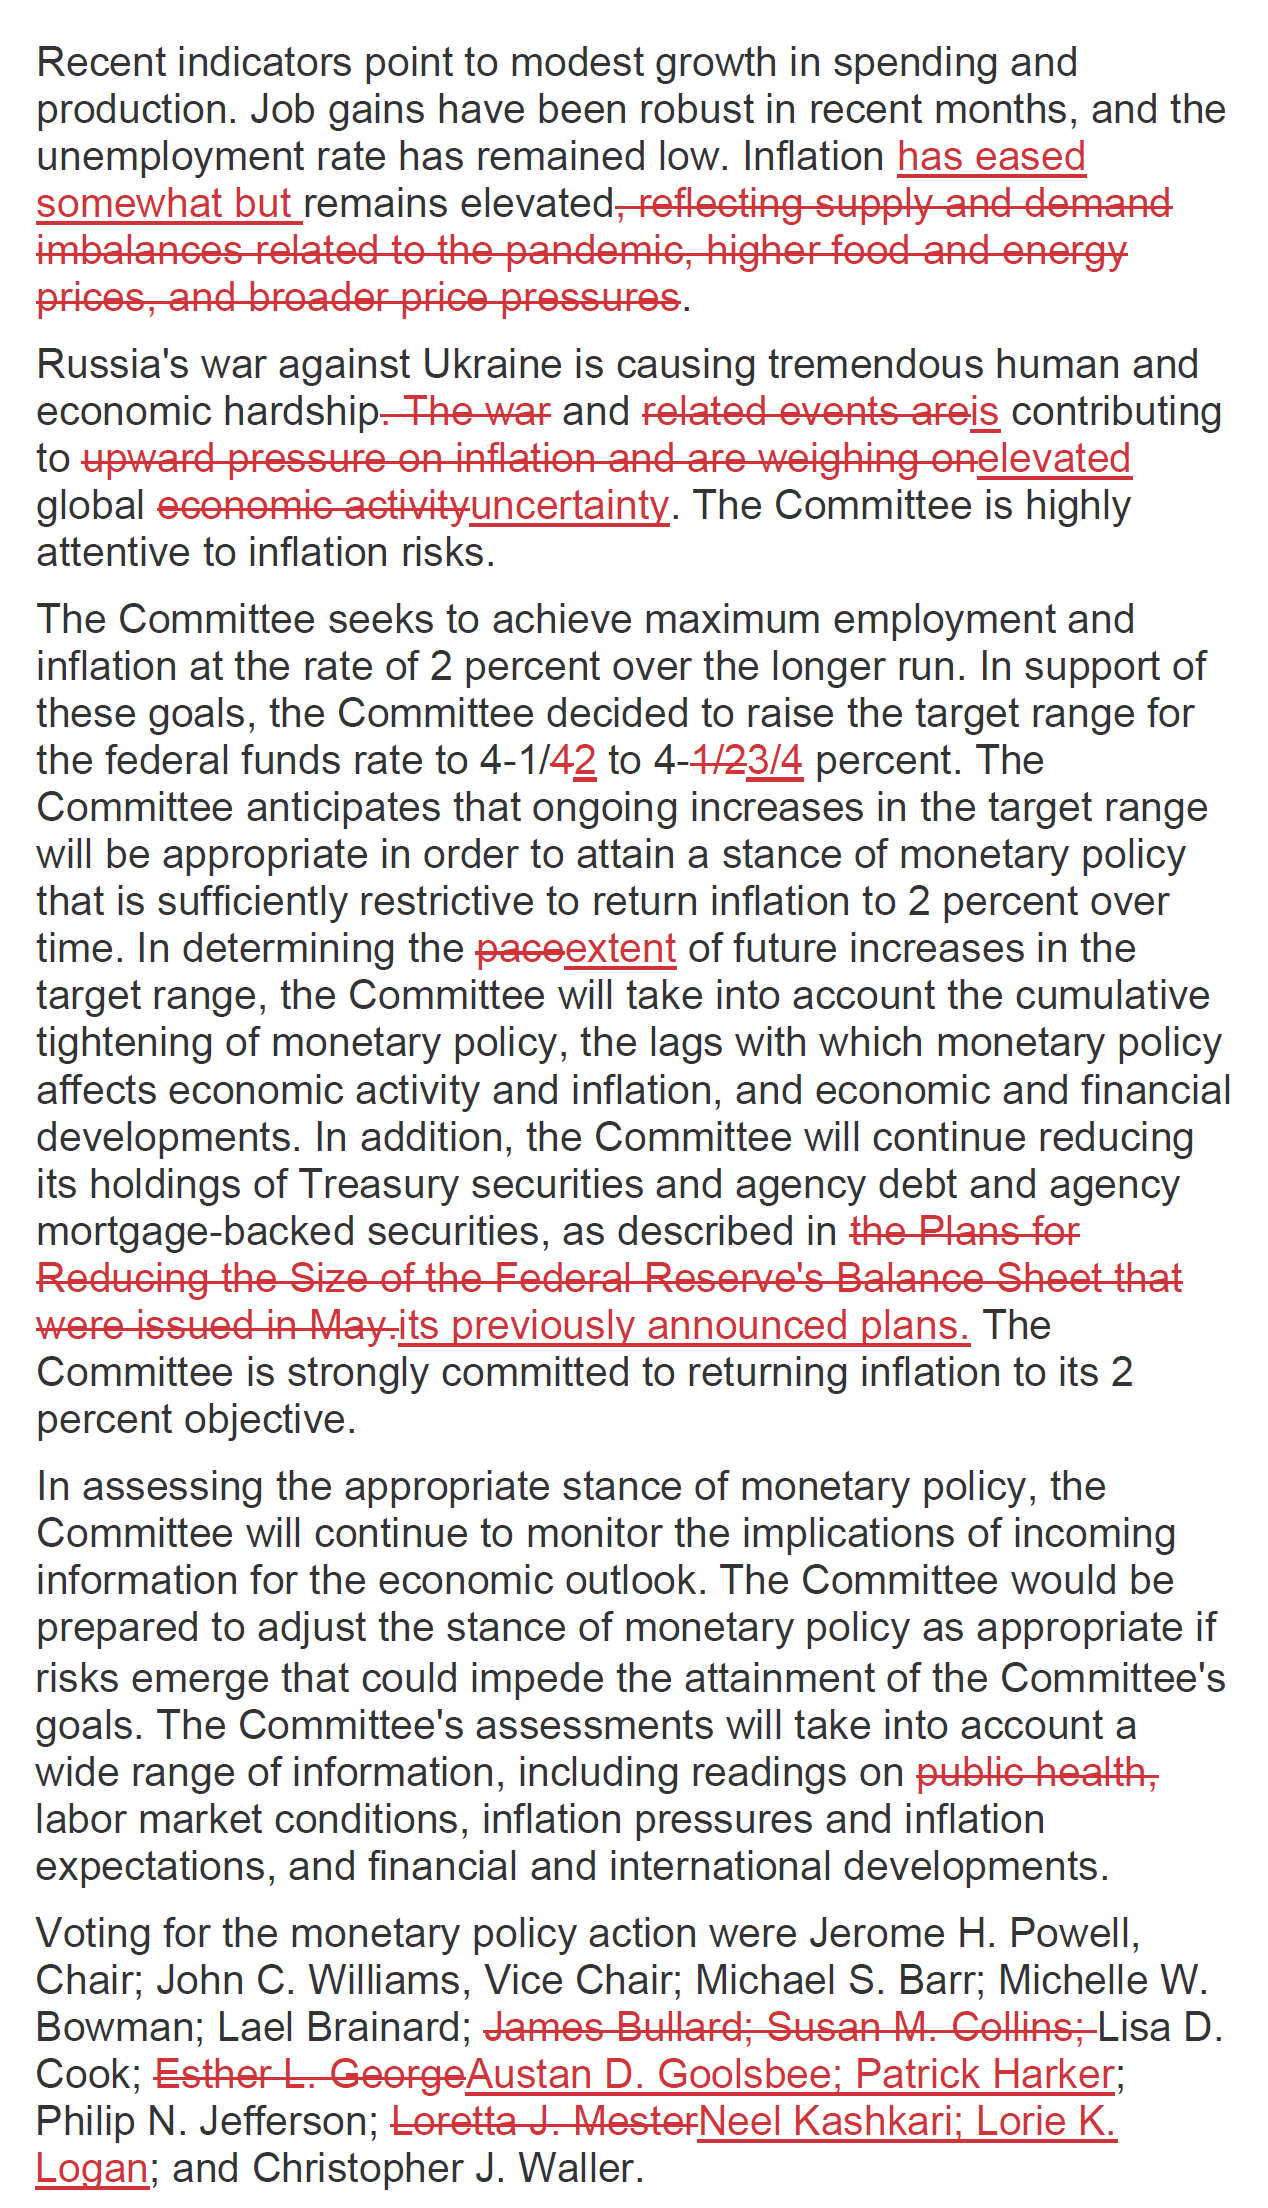 FOMC - změny v prohlášení (únor 2023)